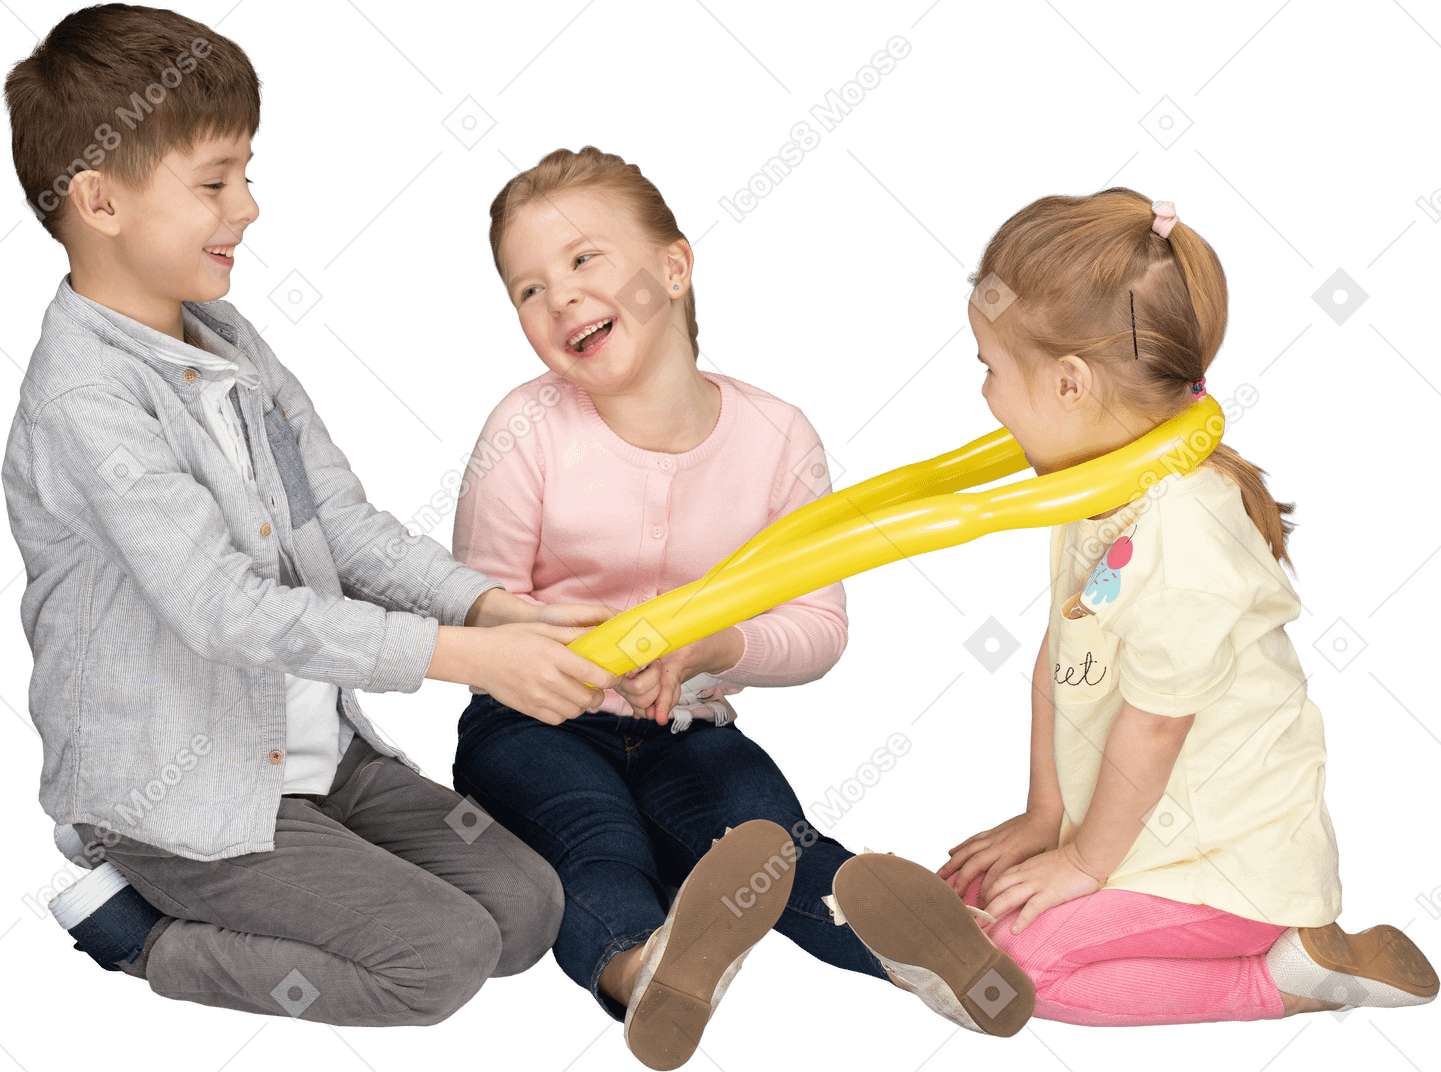 黄色の風船で遊ぶ子供たち